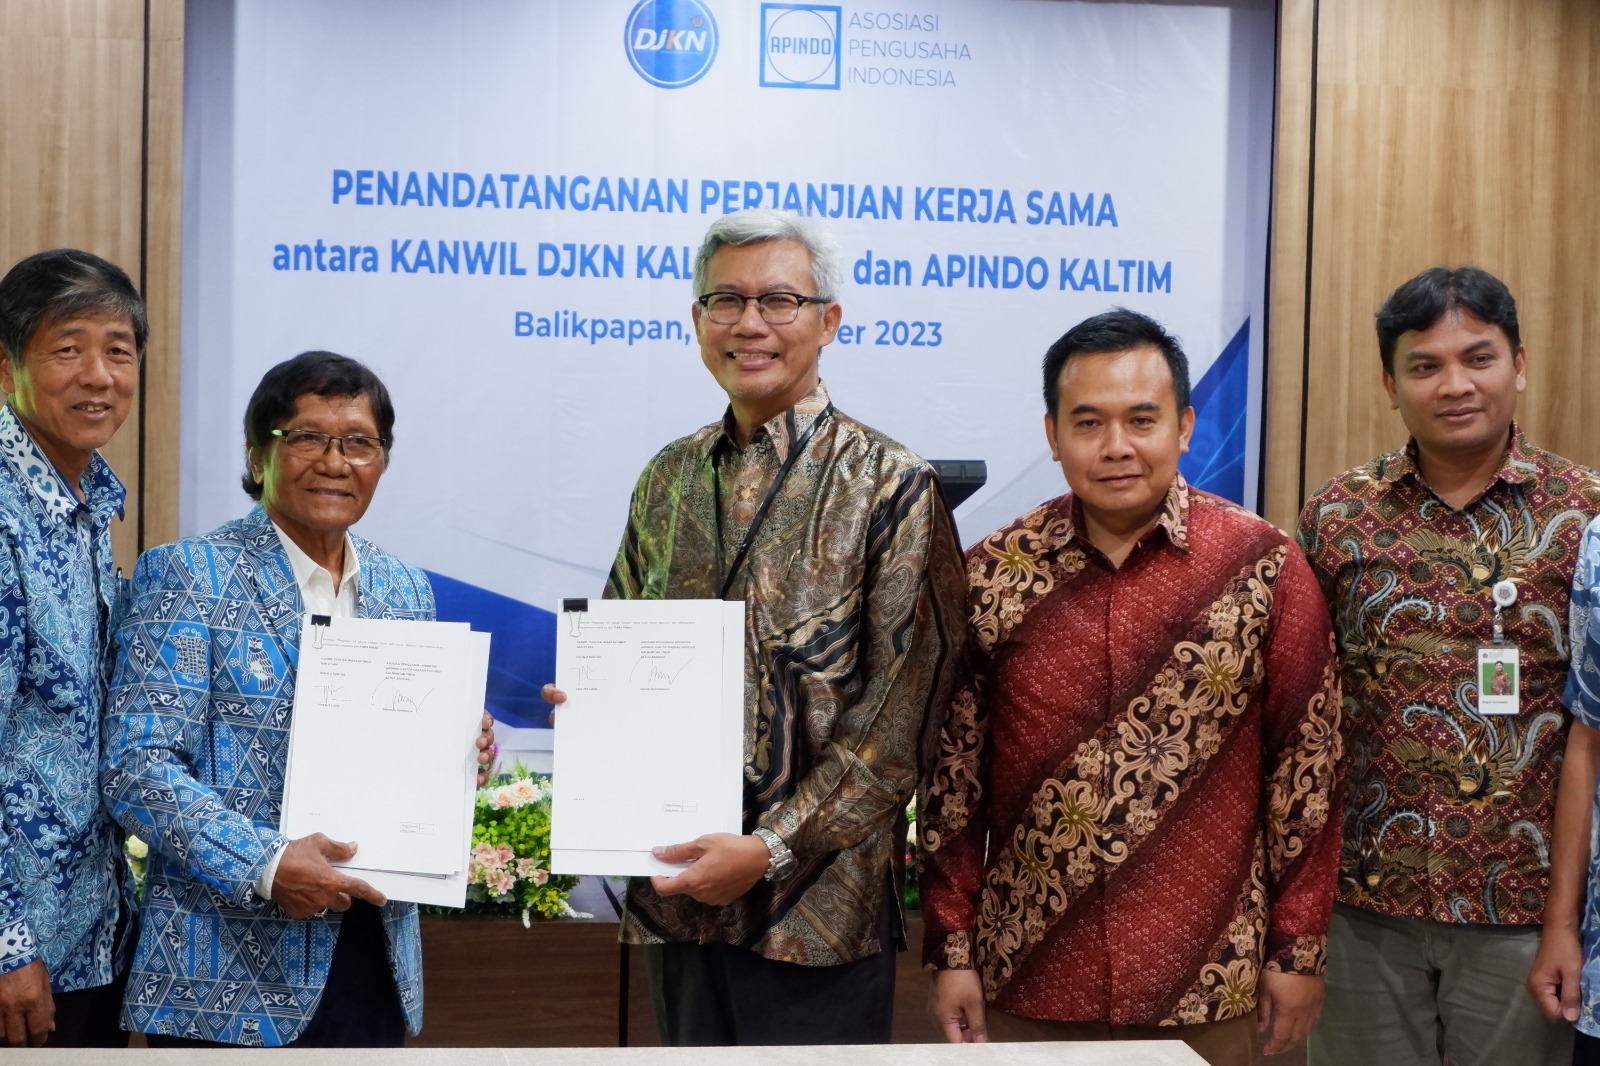 Penandatanganan Perjanjian Kerja Sama Antara Kanwil DJKN Kalimantan Timur Dan Utara dengan APINDO Kalimantan Timur 